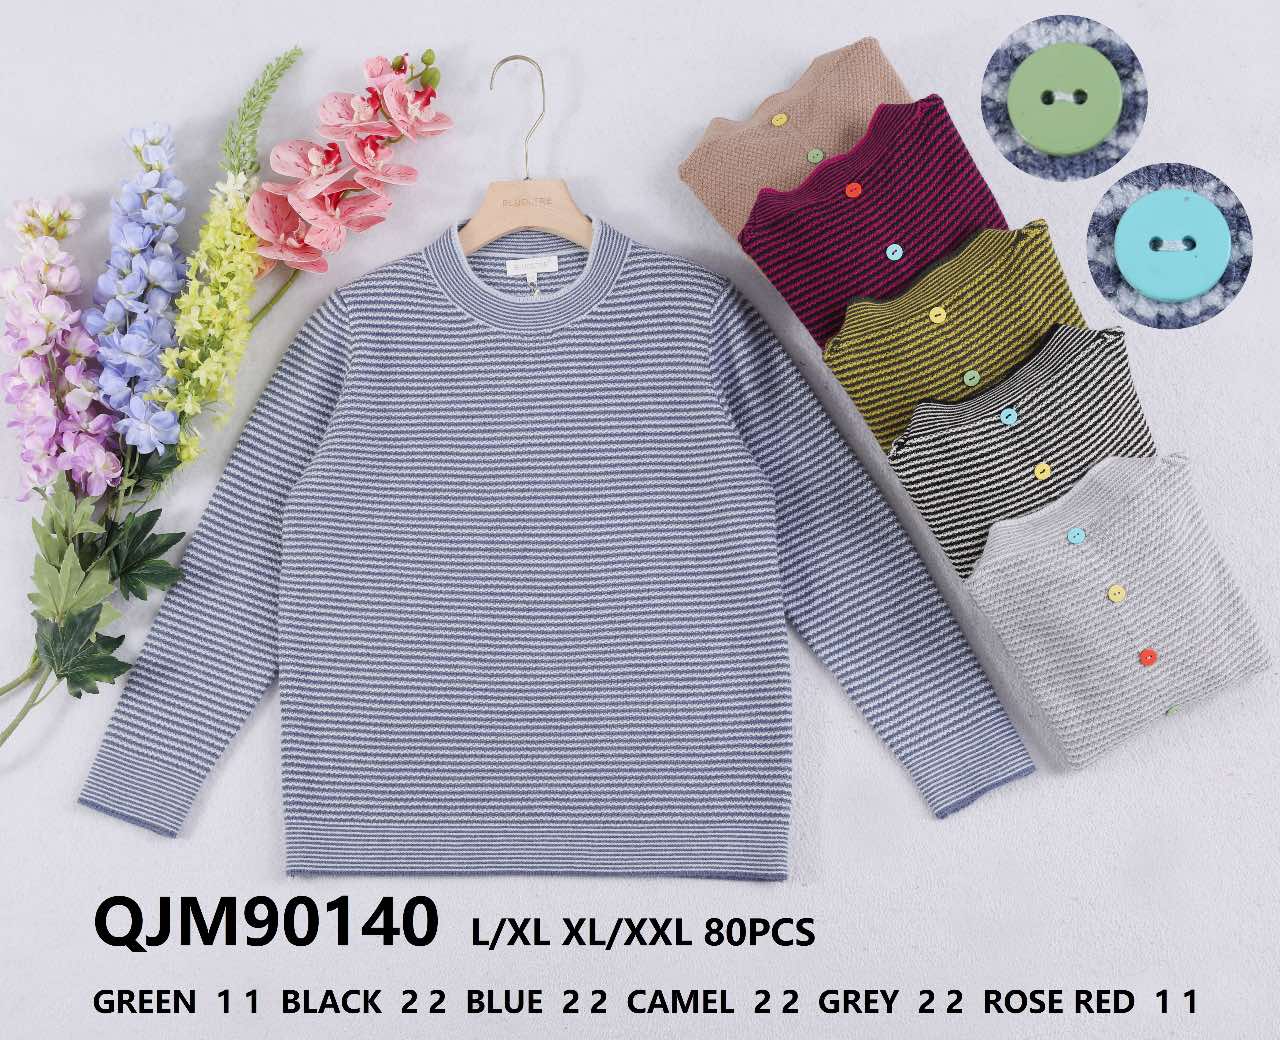 Swetry damska (Francja produkt) Roz M/L.XL/2XL  Mix kolor, Paszka 10 szt